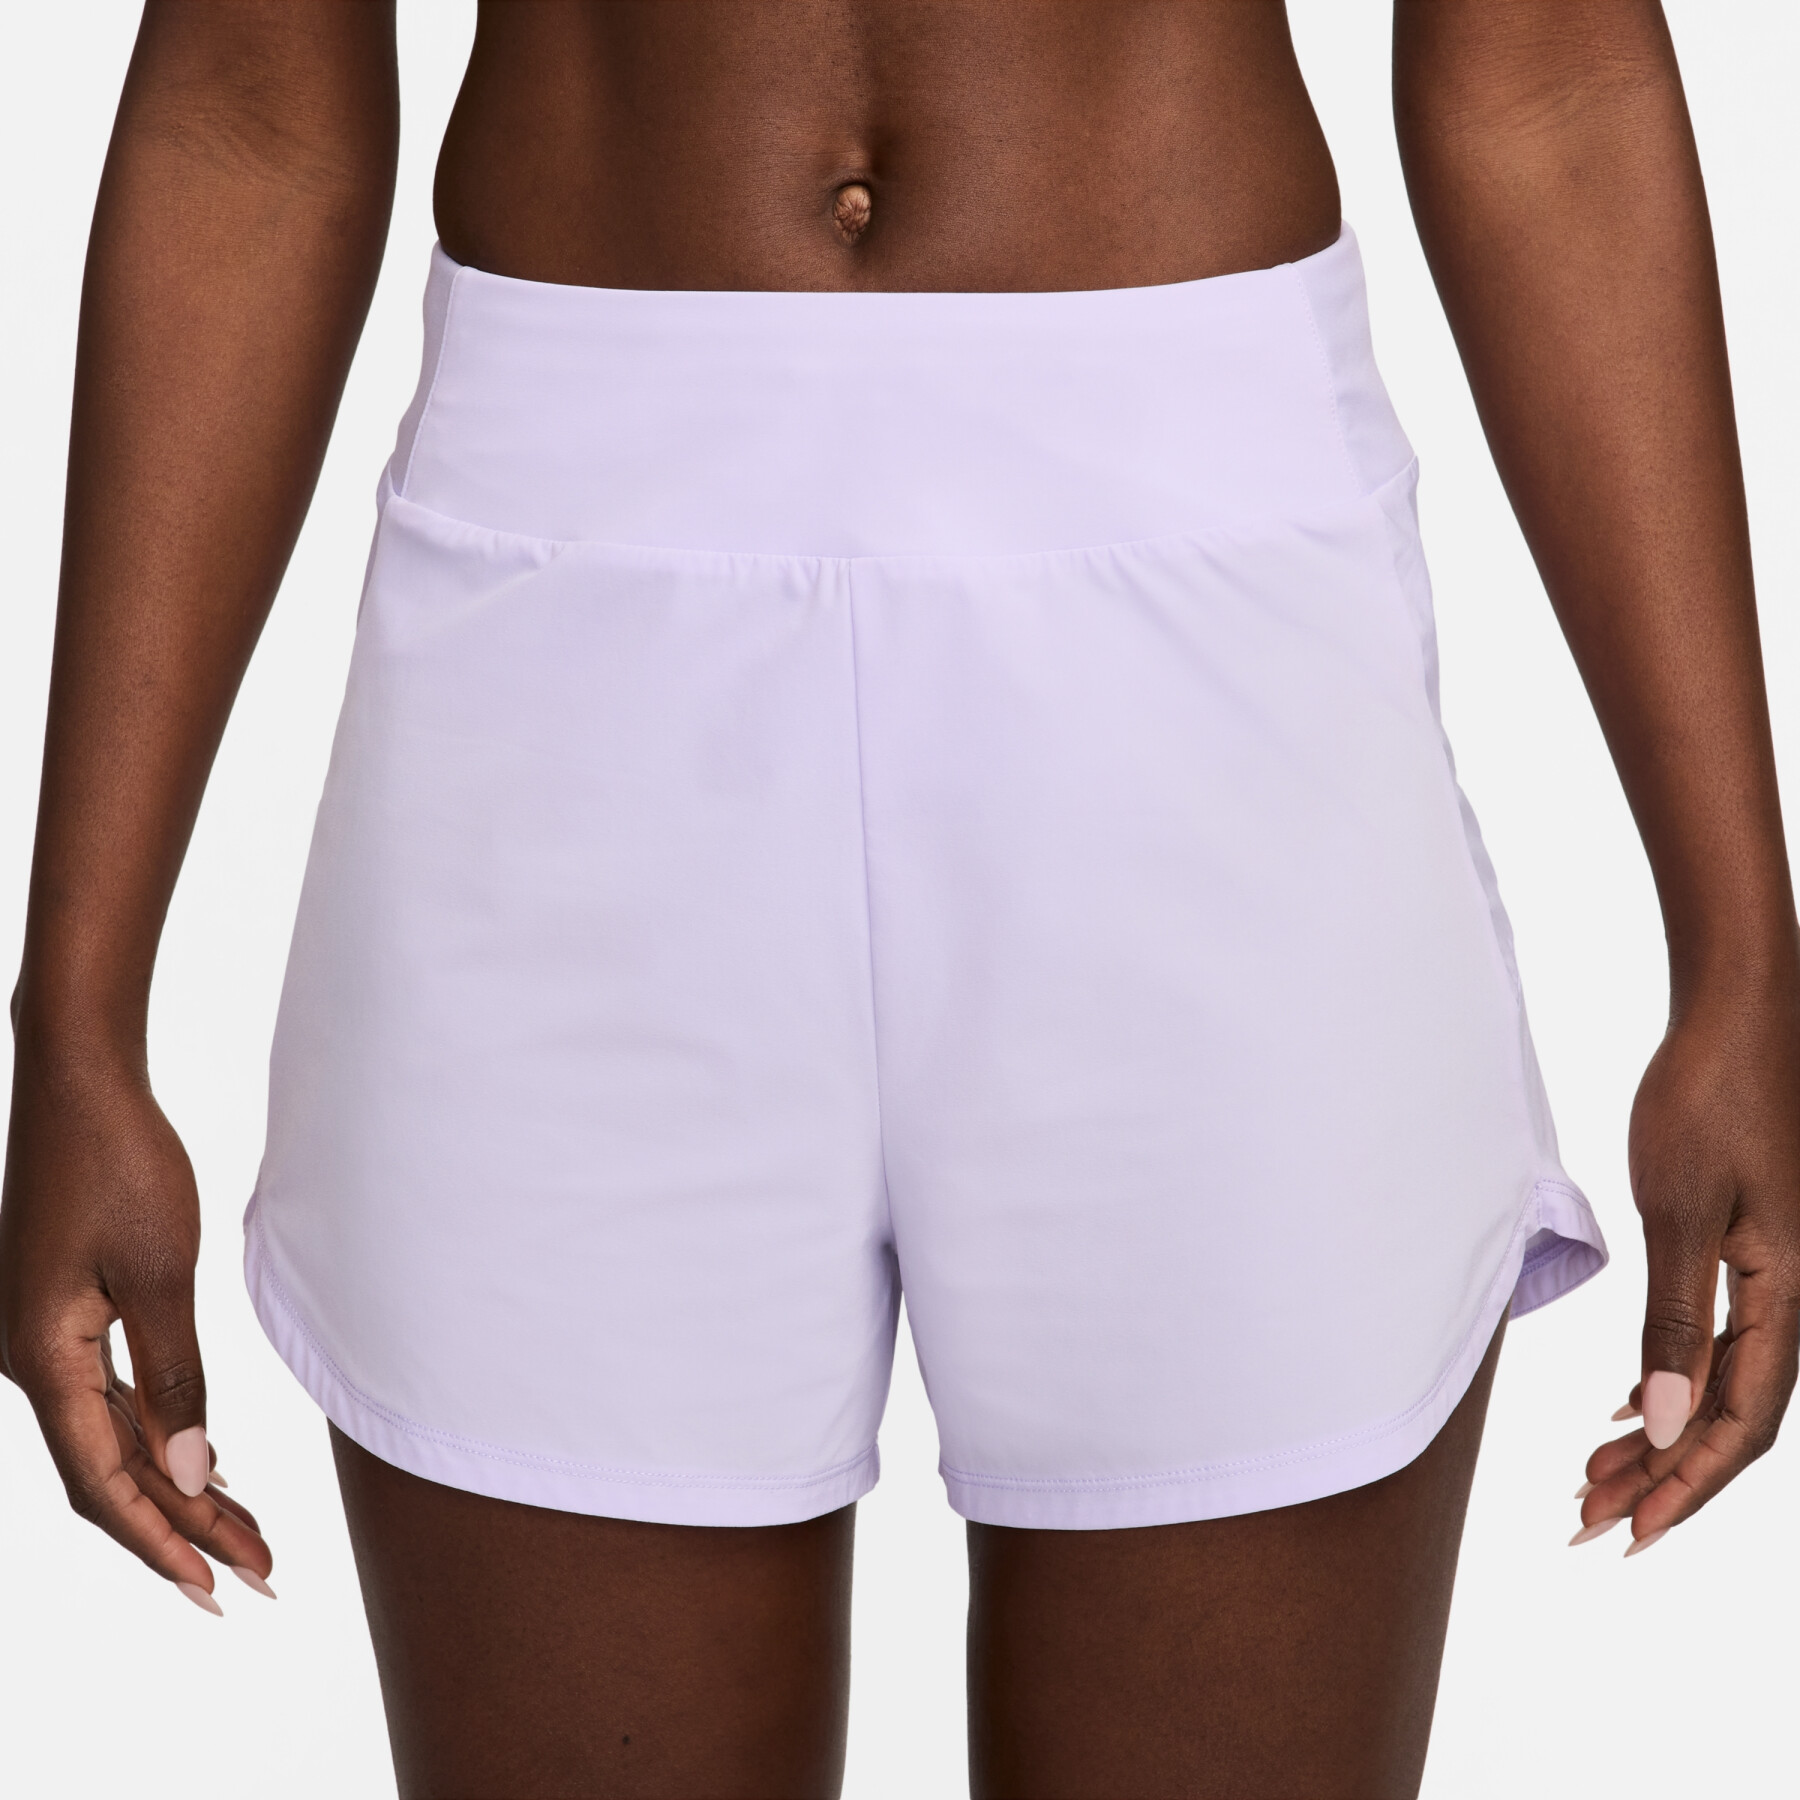 Halbhohe Shorts mit integrierten Untershorts Damen Nike Bliss Dri-FIT